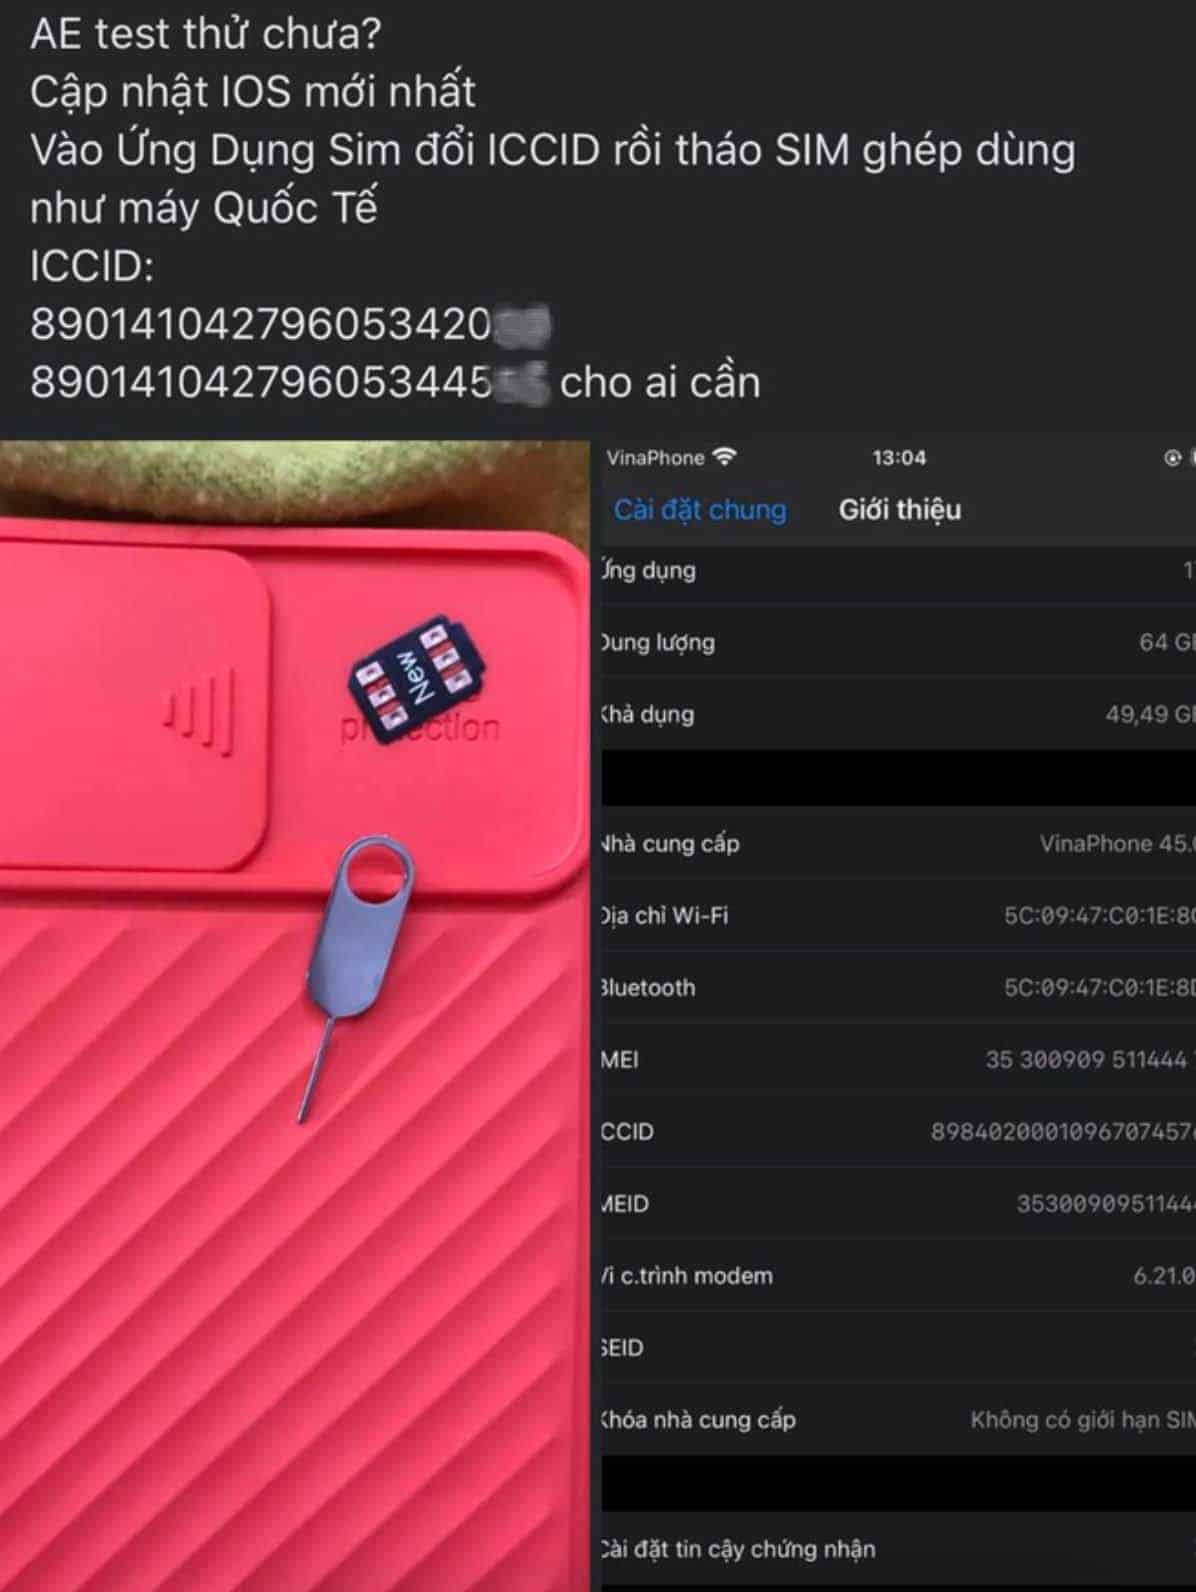 iPhone Lock được fix lên quốc tế bằng mã ICCID mới, giá iPhone có thay đổi hay không?